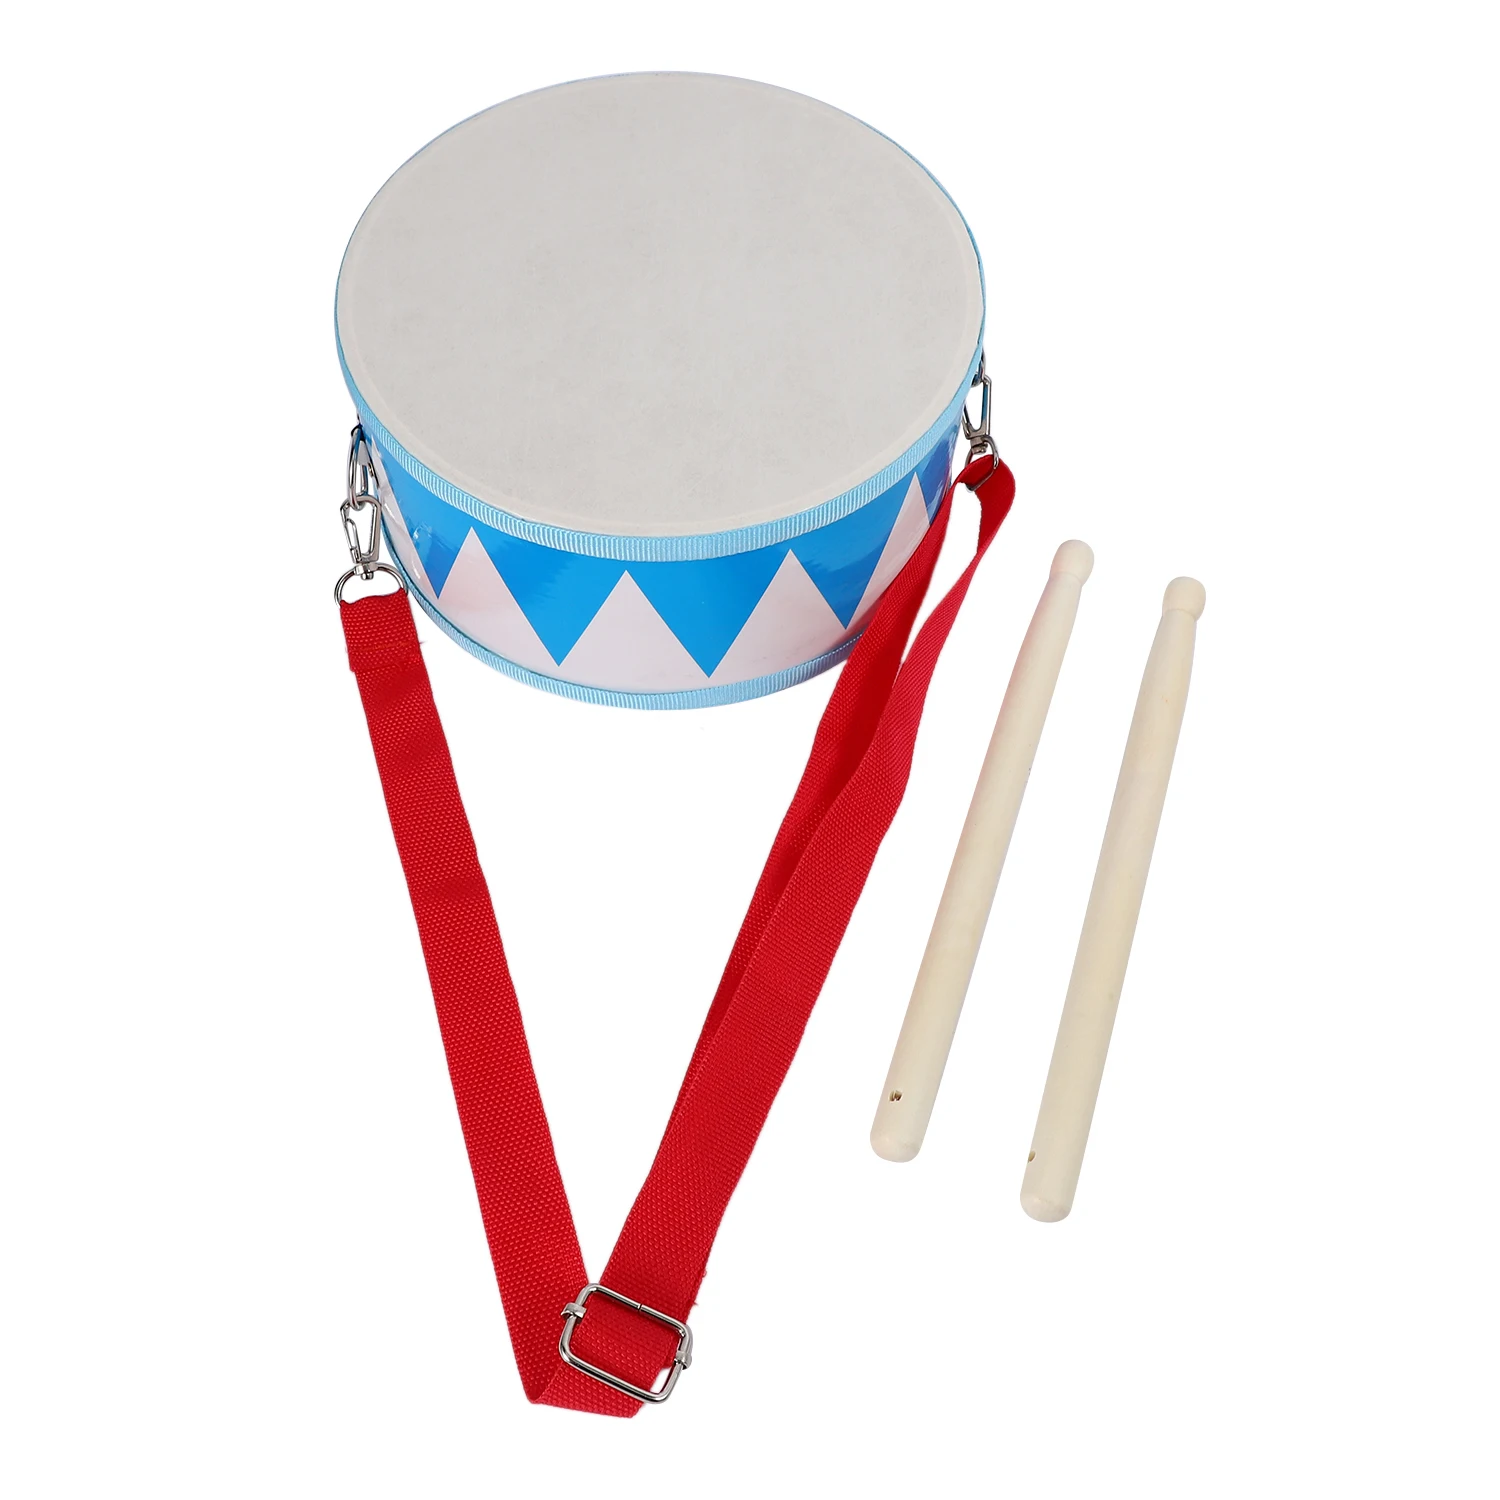 Детский барабан, деревянная игрушечная ударная установка с ремнем для переноски, палочка для малышей, подарок для развития чувства ритма у детей